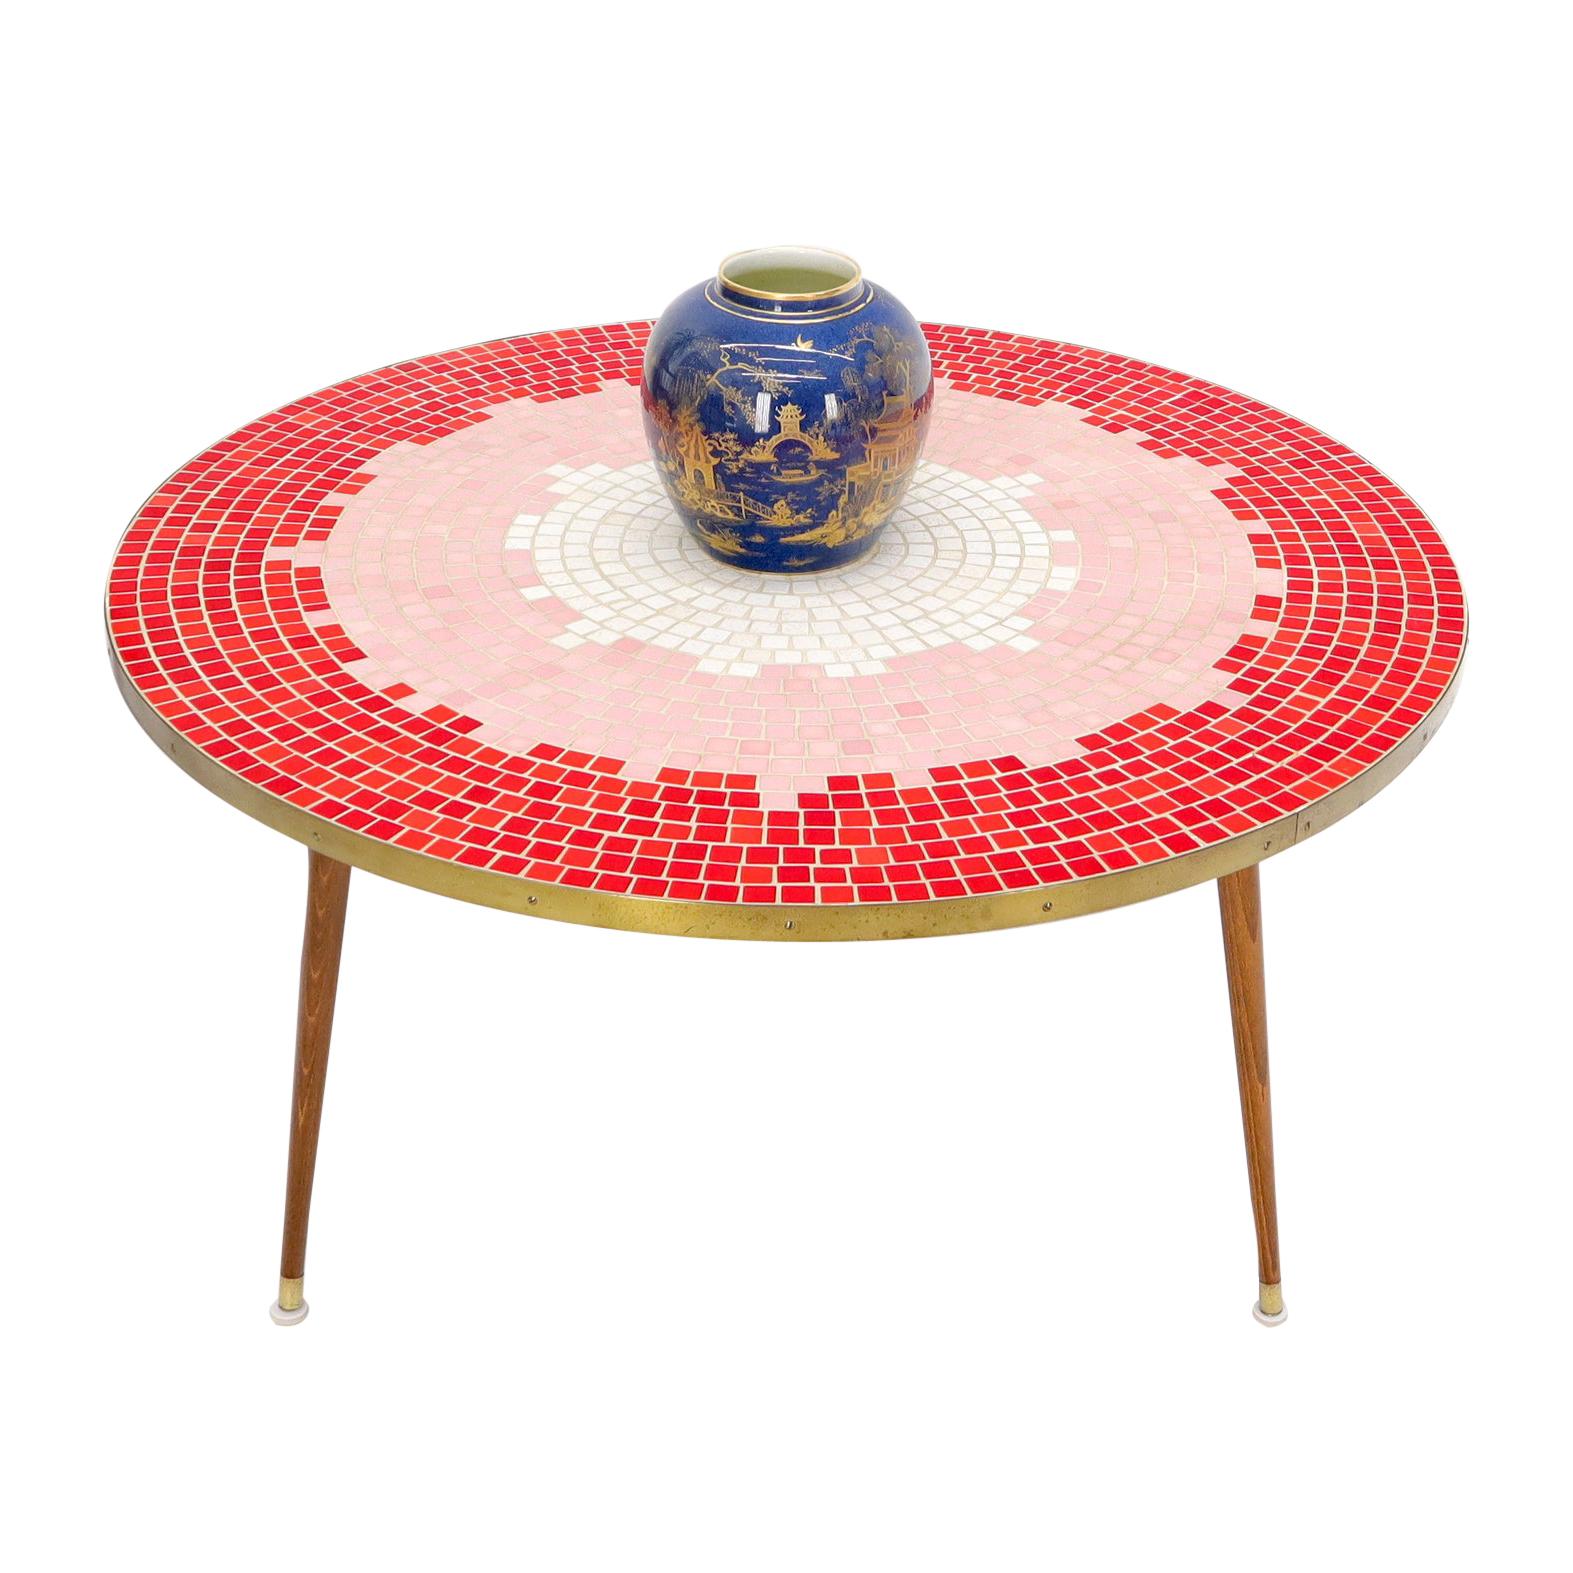 Table basse ronde en mosaïque de carreaux rouges Sunburst, mi-siècle moderne